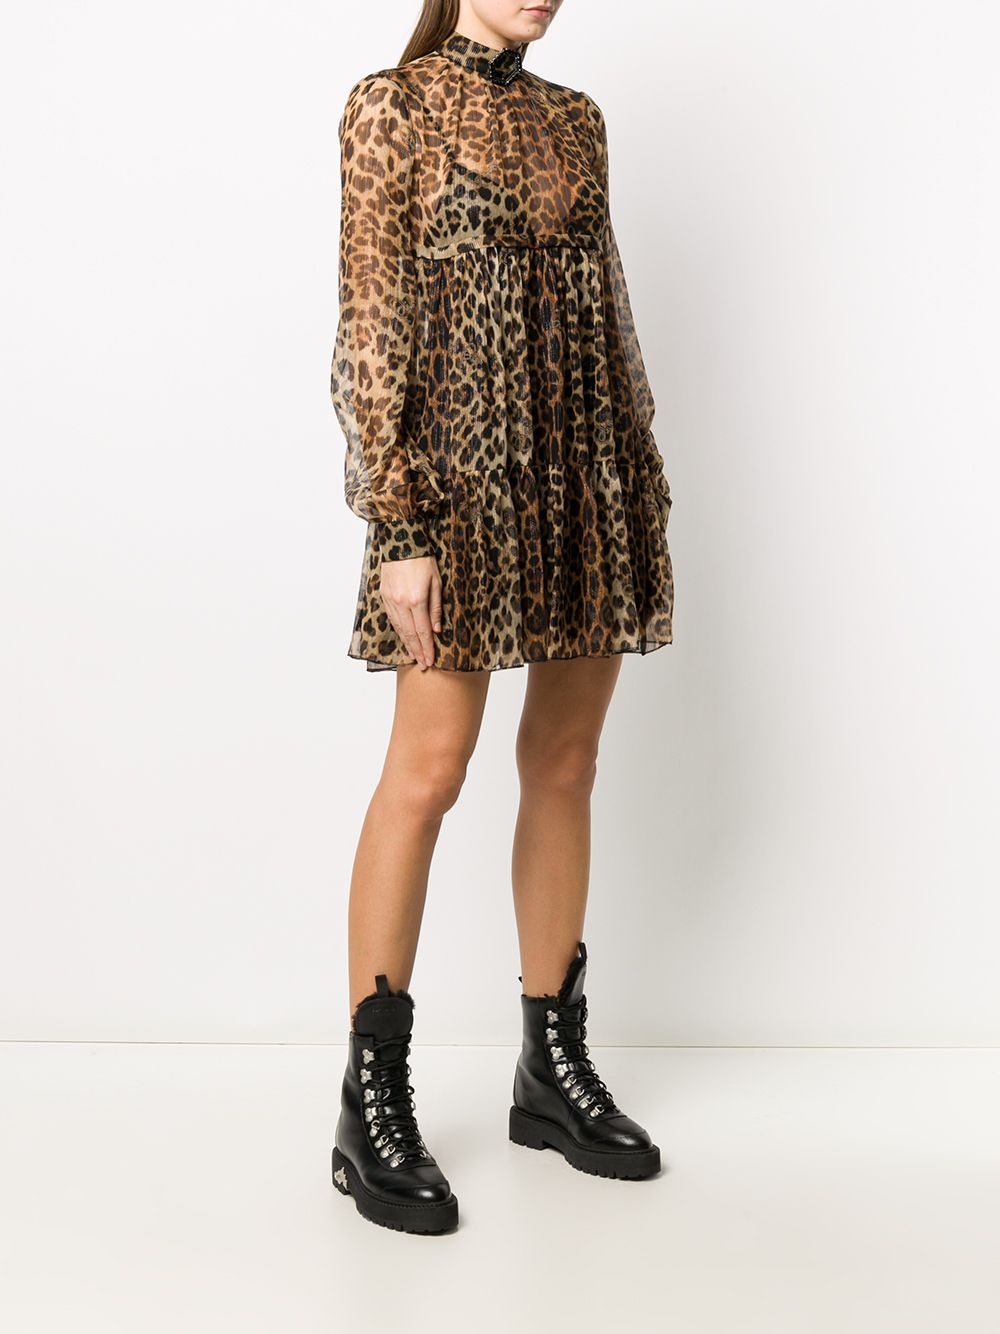 фото Philipp plein полупрозрачное платье с леопардовым принтом